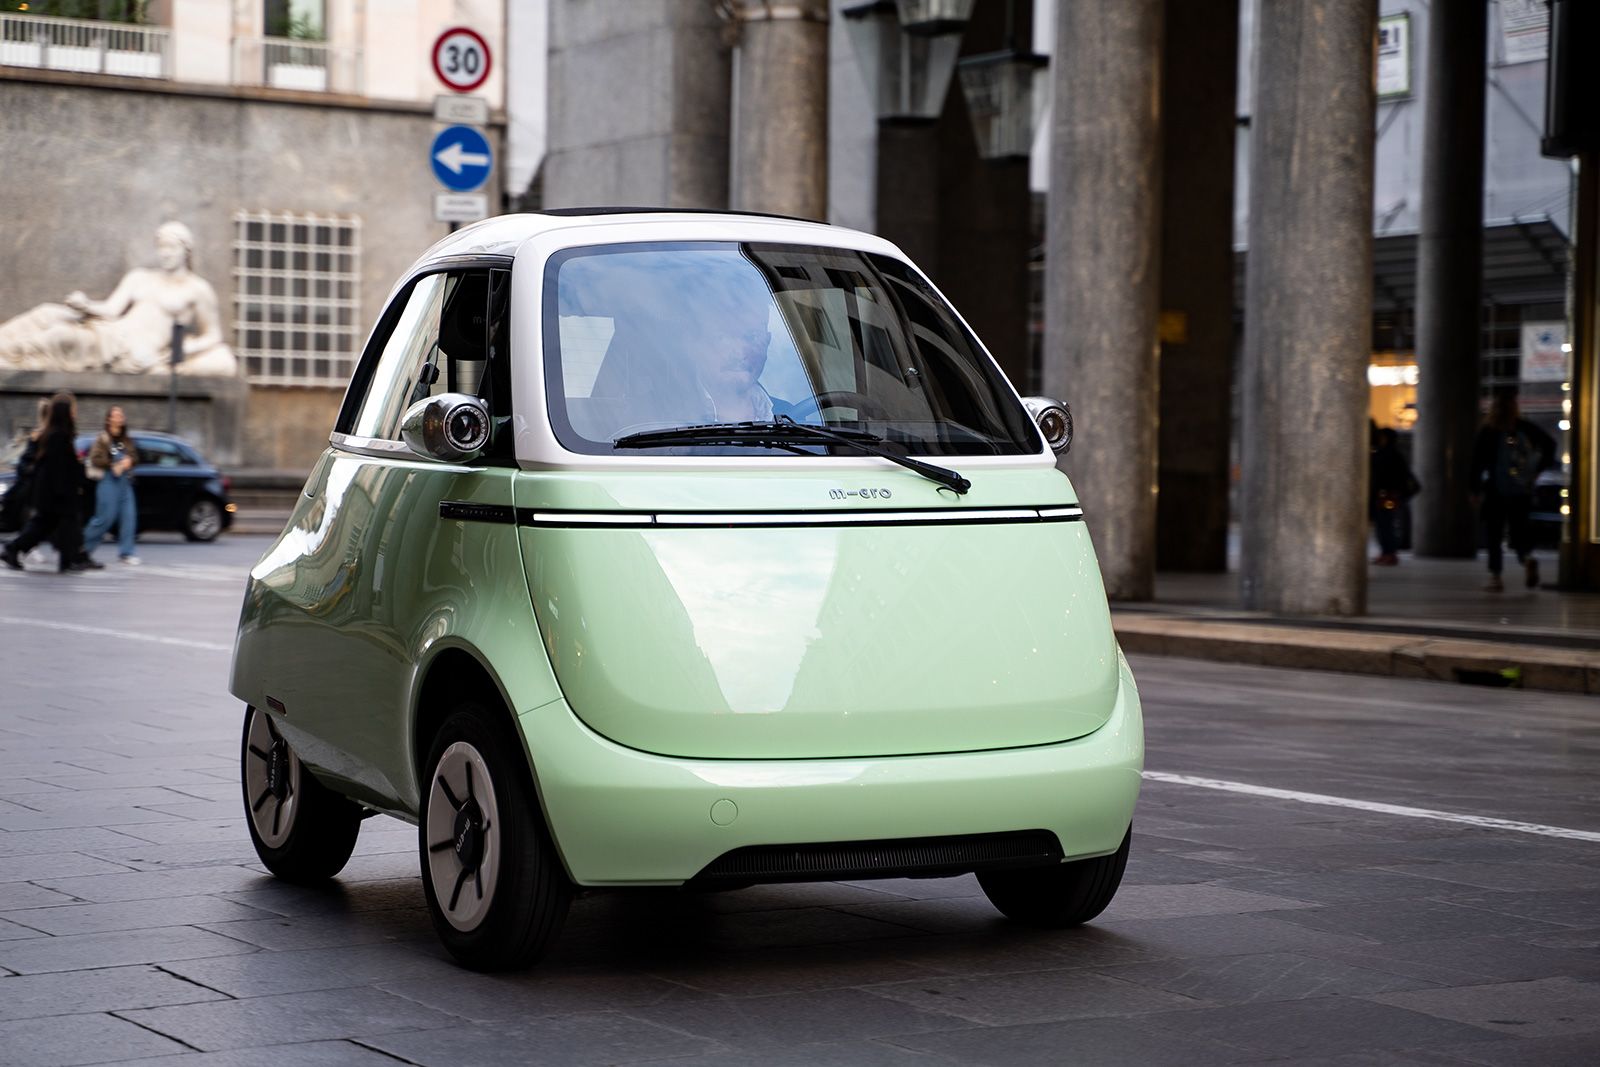 The retro-futuristic Microlino takes inspiration from 1950s "bubble" cars.